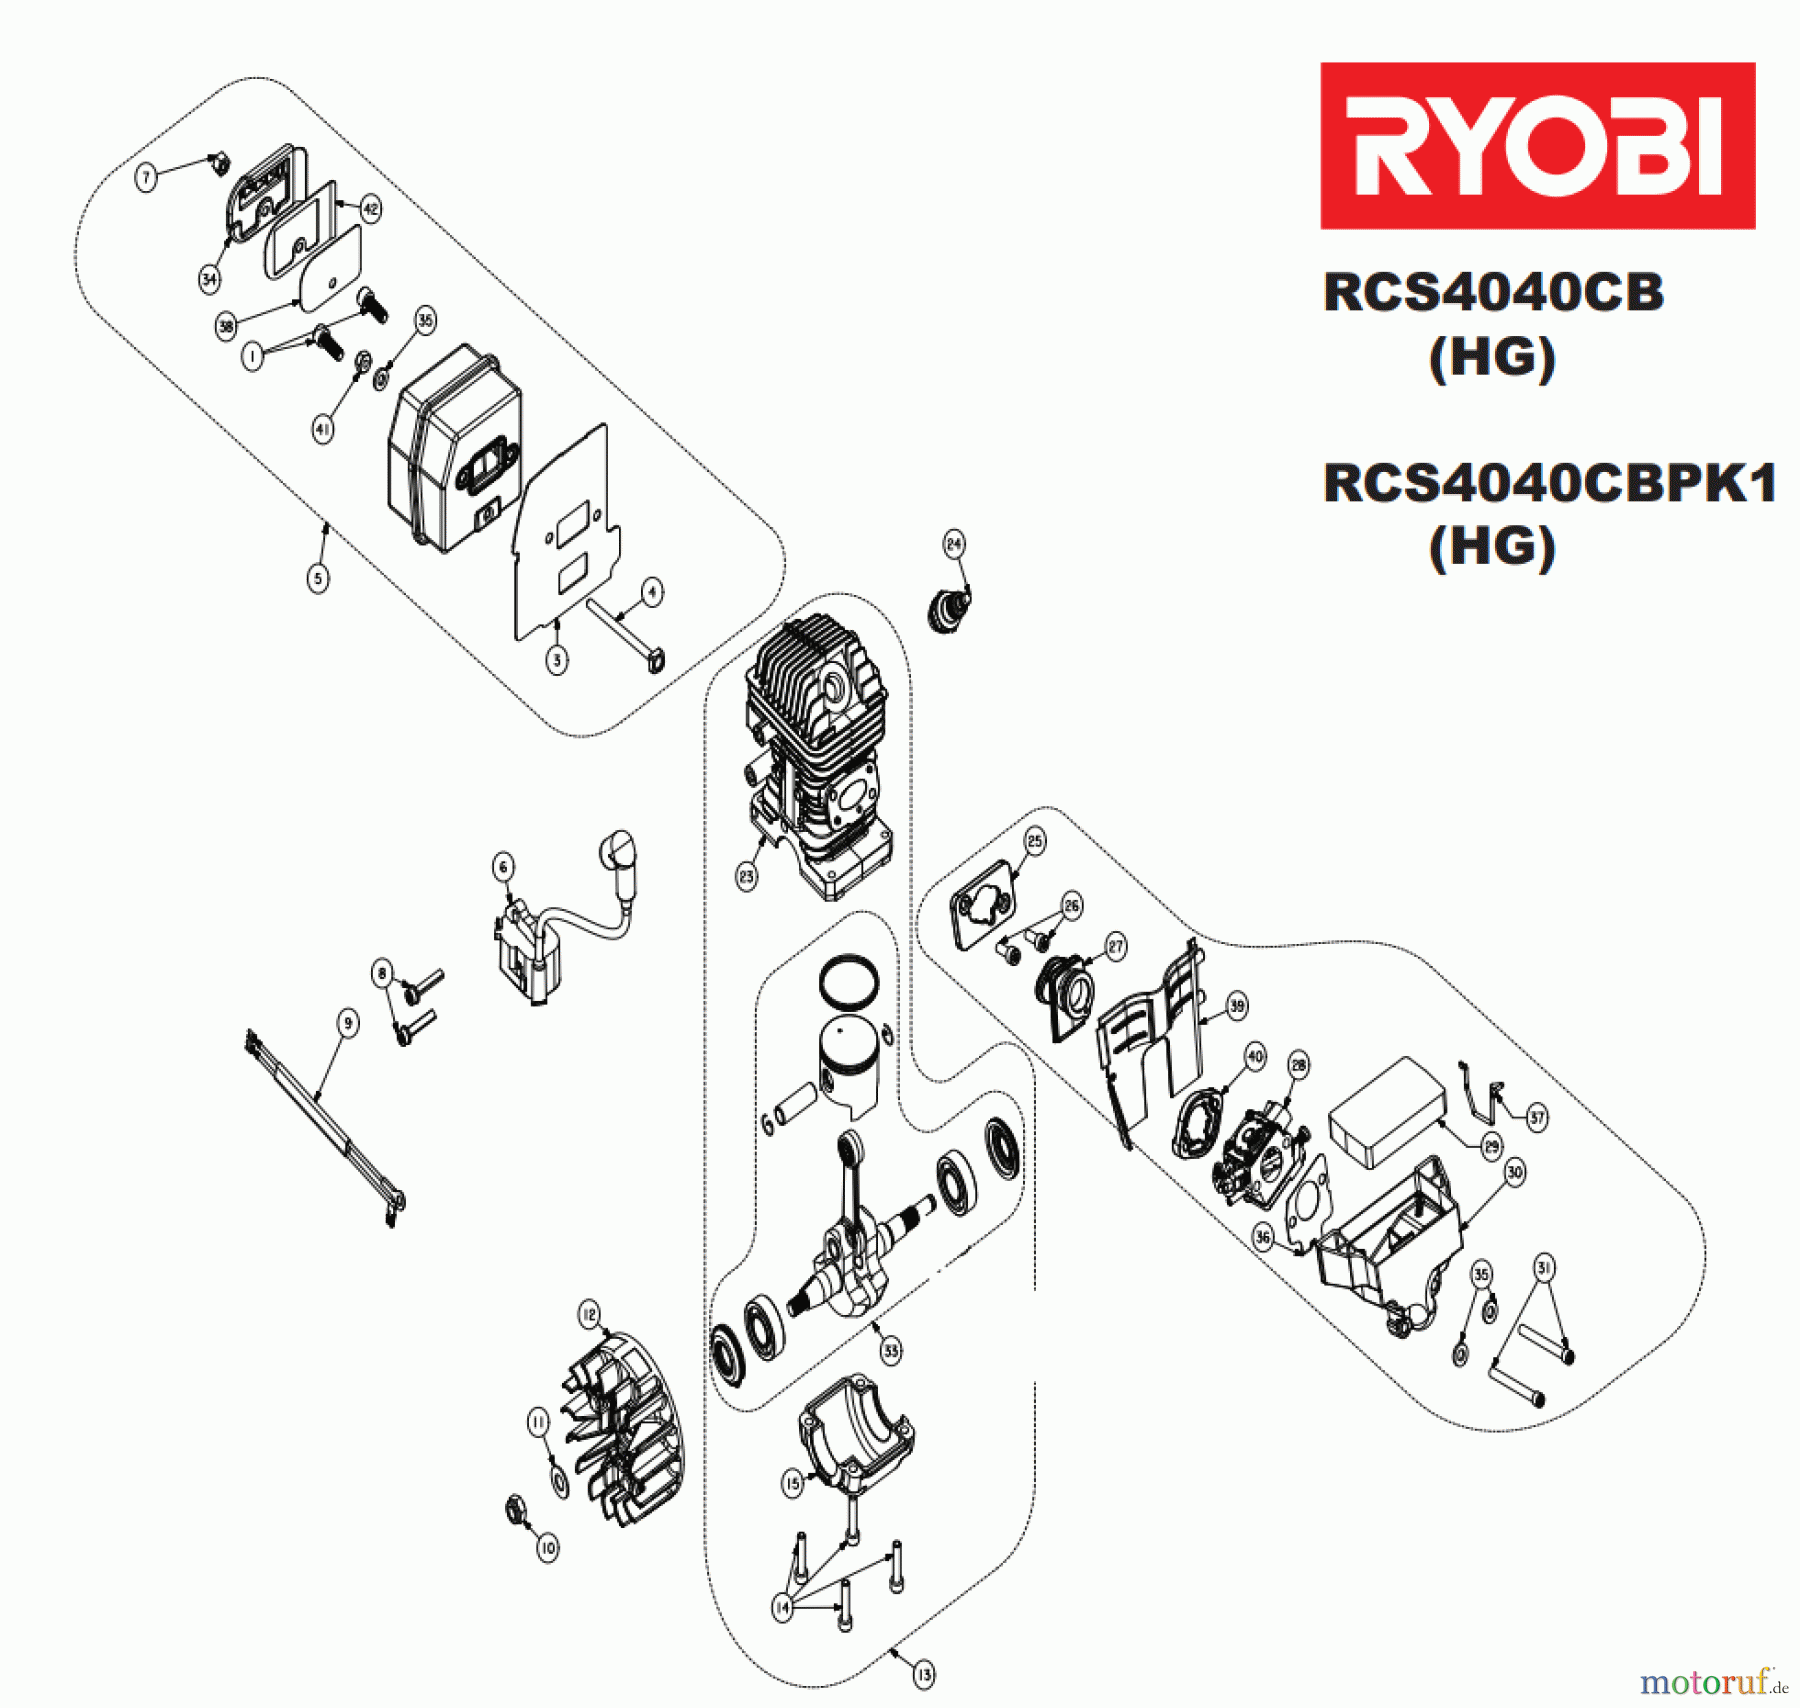  Ryobi Kettensägen Benzin RCS4040CBPK1, 5133001671 Seite 2